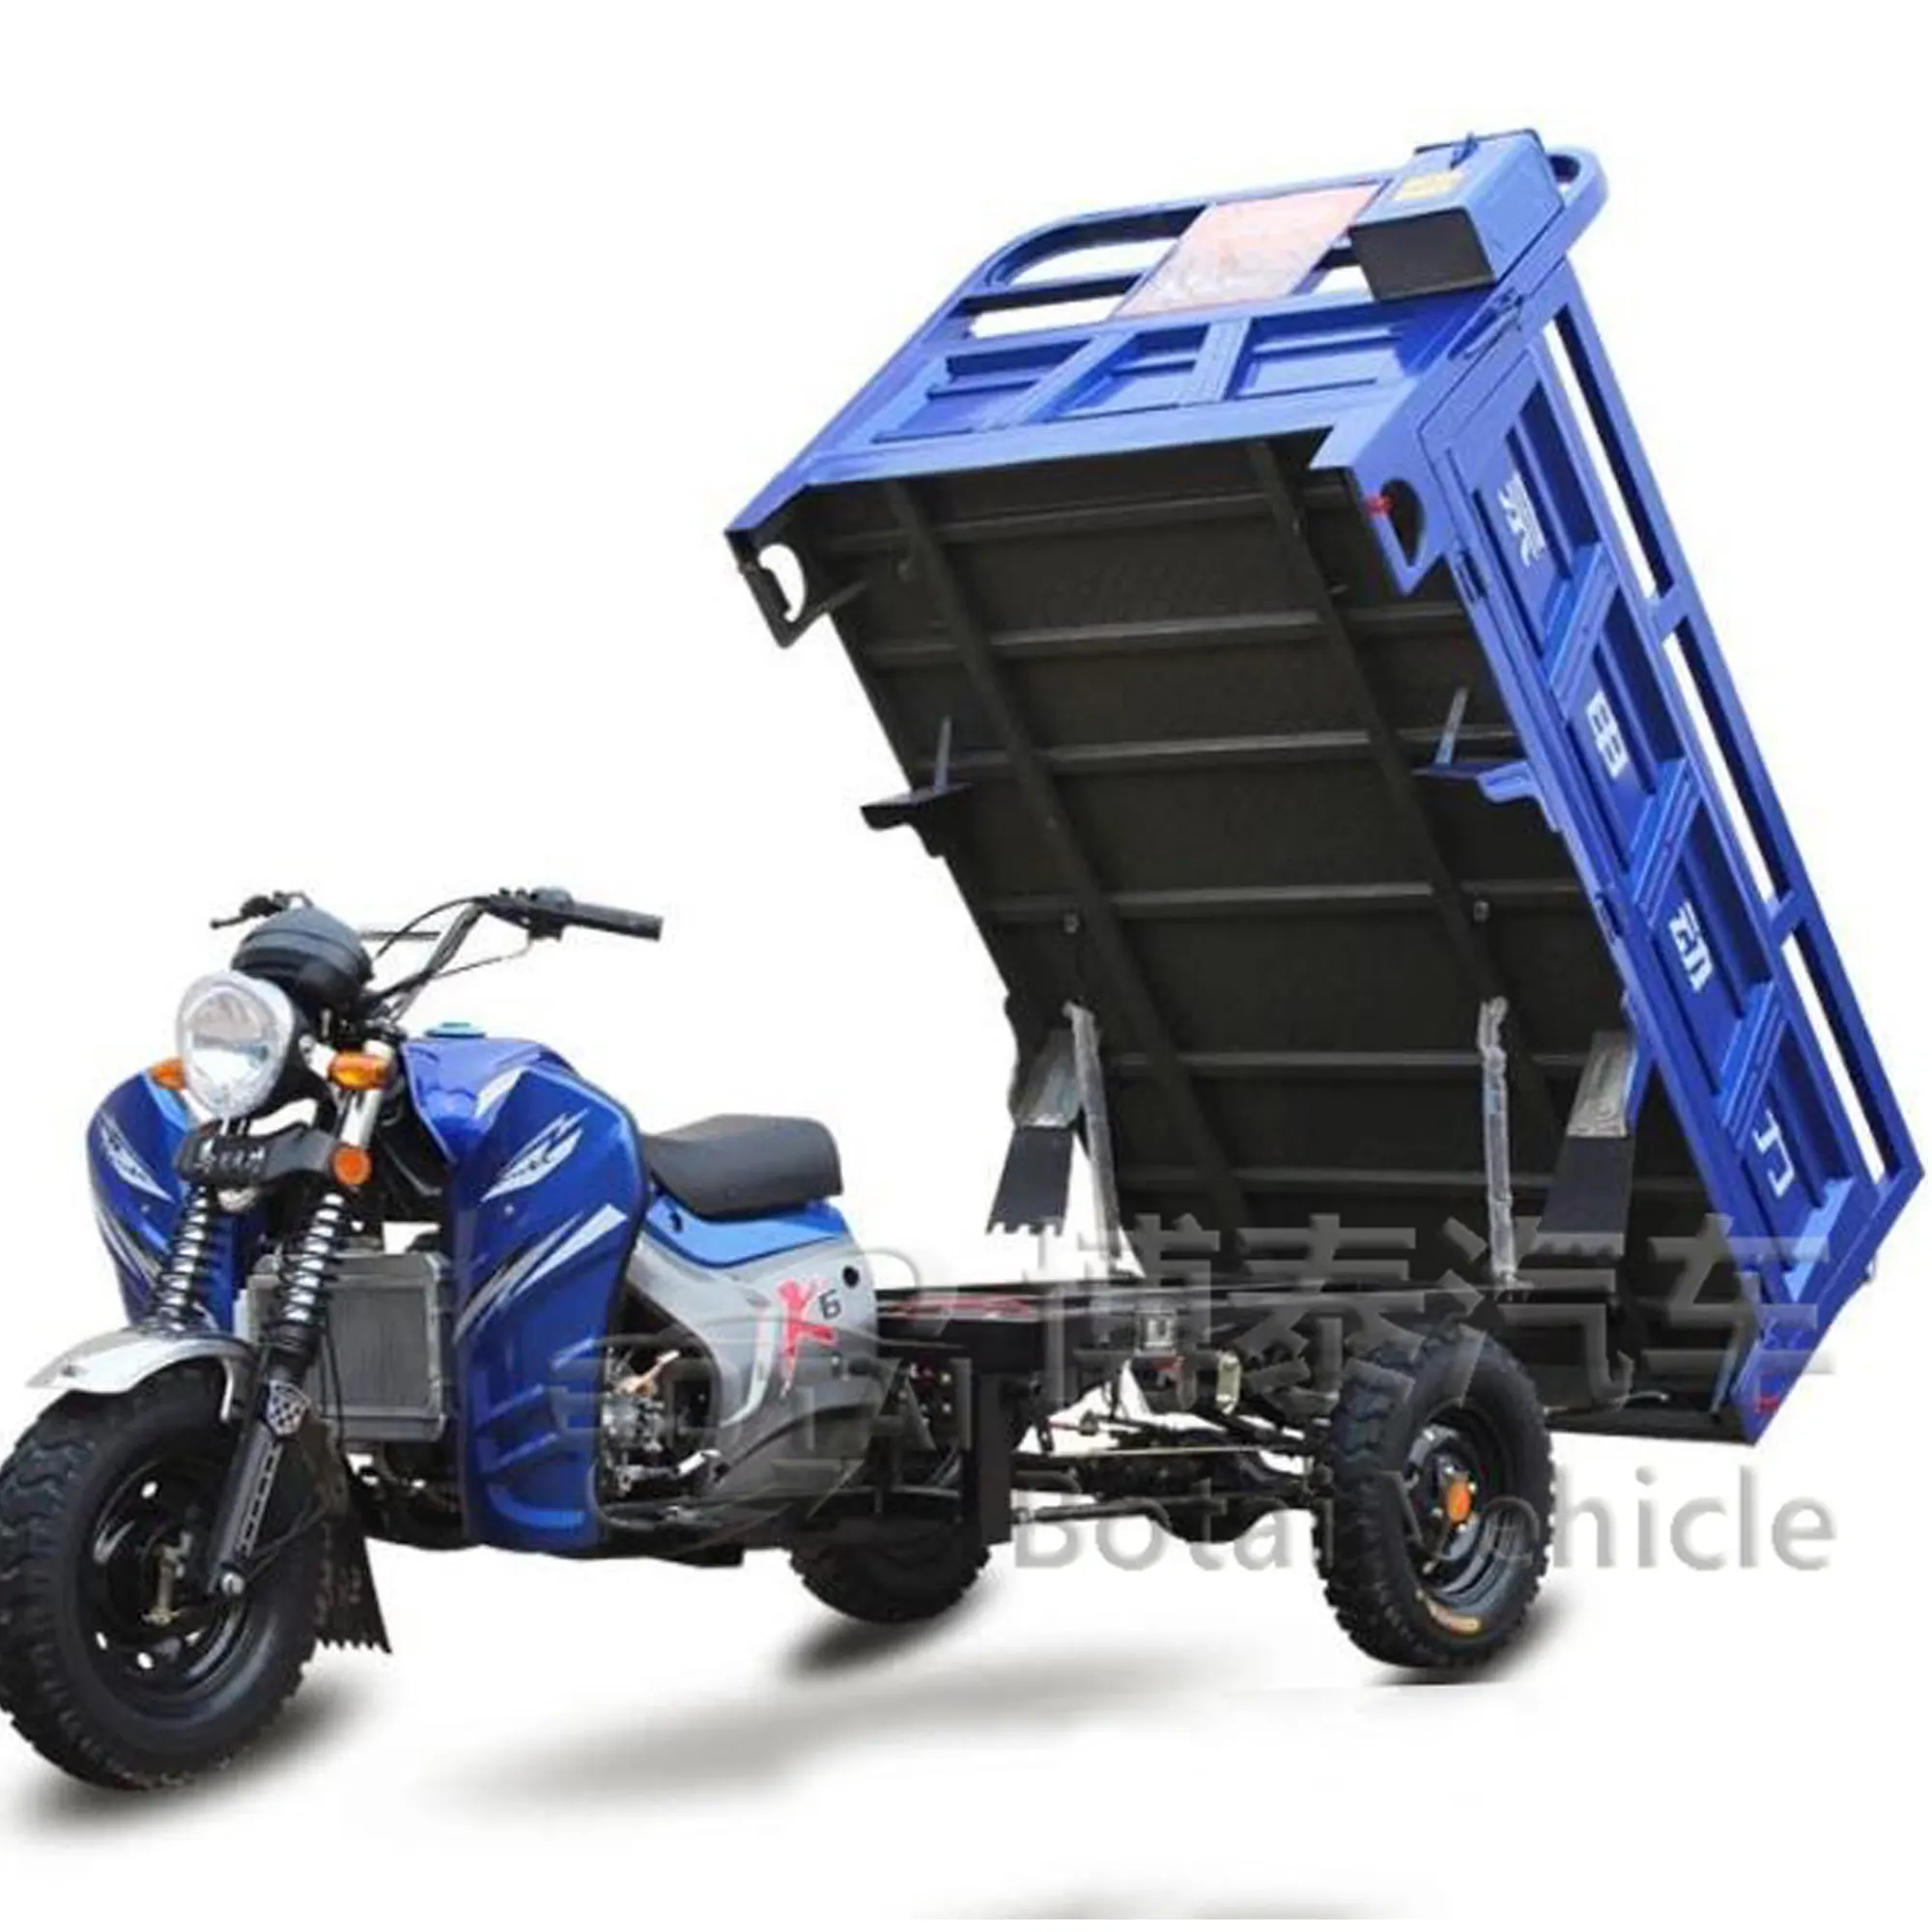 Yabancı sıcak satış özelleştirilmiş açık kabin güçlü tırmanma yeteneği MotorcycleTruck 3 tekerlekli kargo üç tekerlekli bisiklet motosiklet